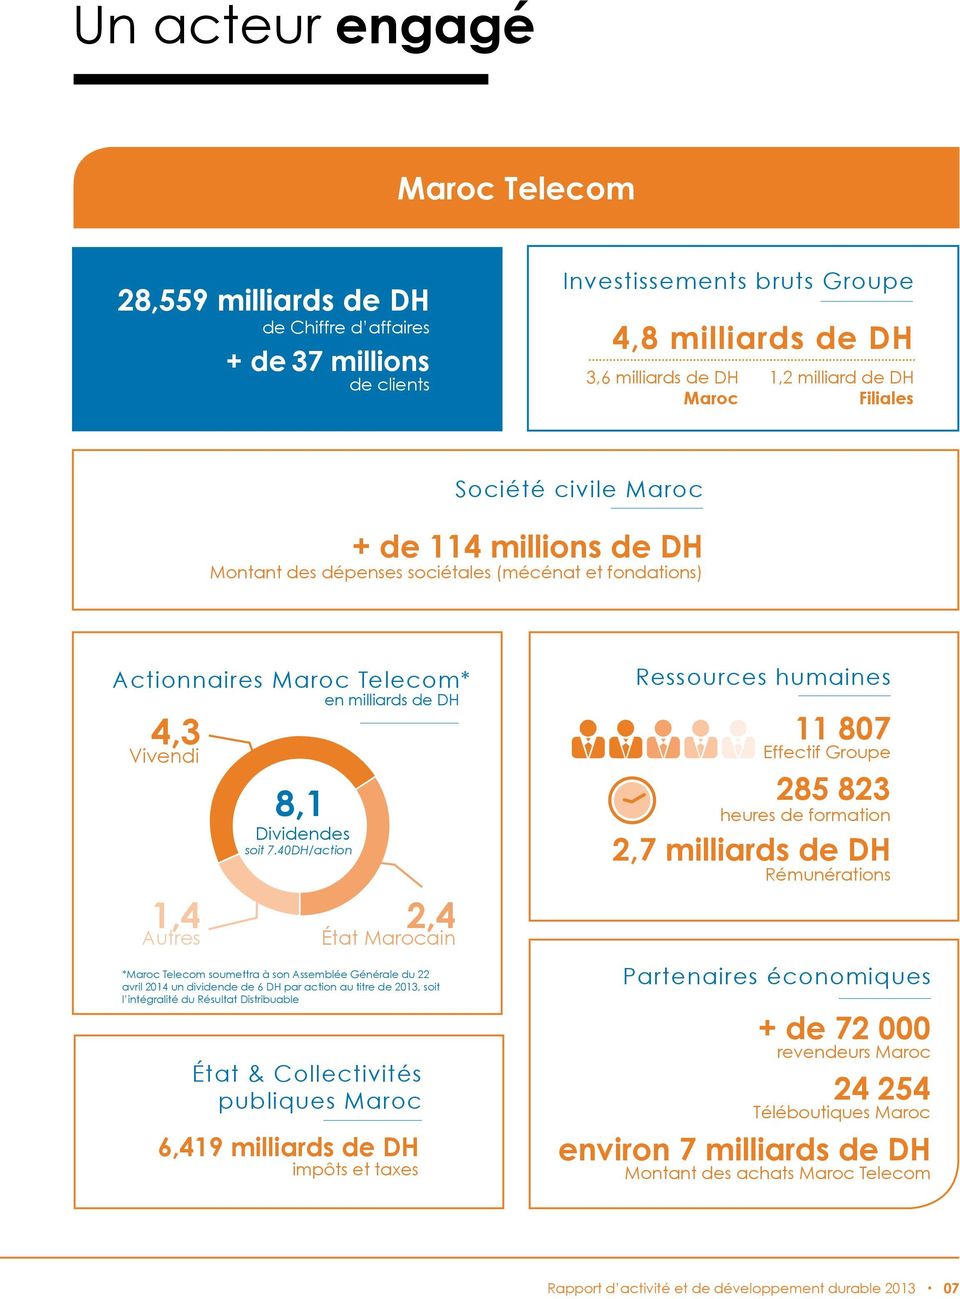 7.40DH/action État & Collectivités publiques Maroc 6,419 milliards de DH impôts et taxes 2,4 État Marocain *Maroc Telecom soumettra à son Assemblée Générale du 22 avril 2014 un dividende de 6 DH par